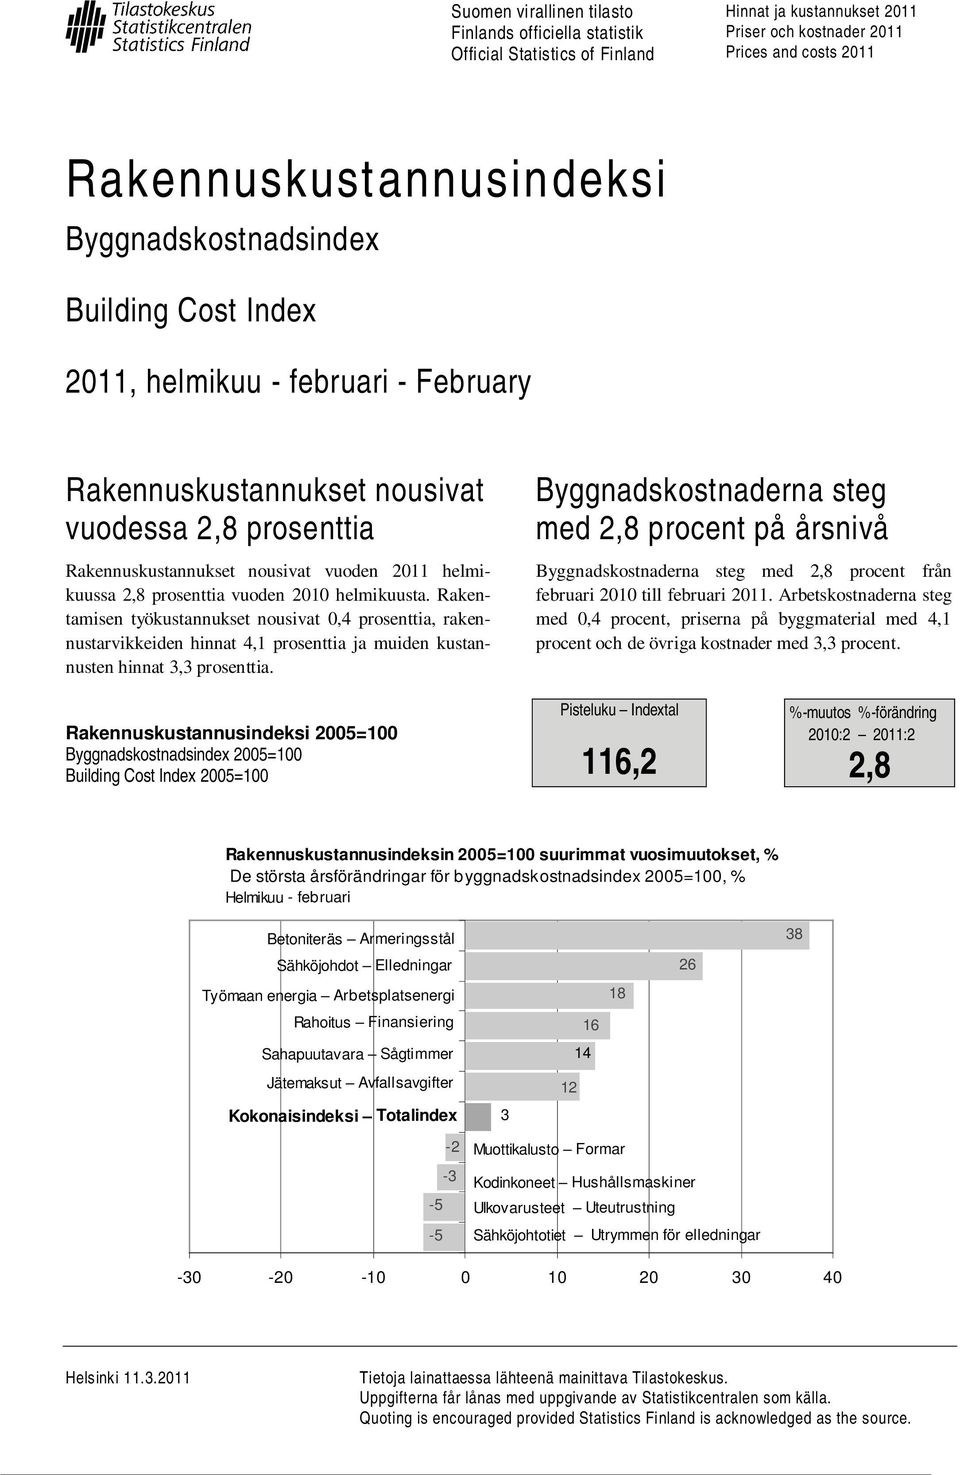 prosenttia vuoden 2010 helmikuusta. Rakentamisen työkustannukset nousivat 0,4 prosenttia, rakennustarvikkeiden hinnat 4,1 prosenttia ja muiden kustannusten hinnat 3,3 prosenttia.